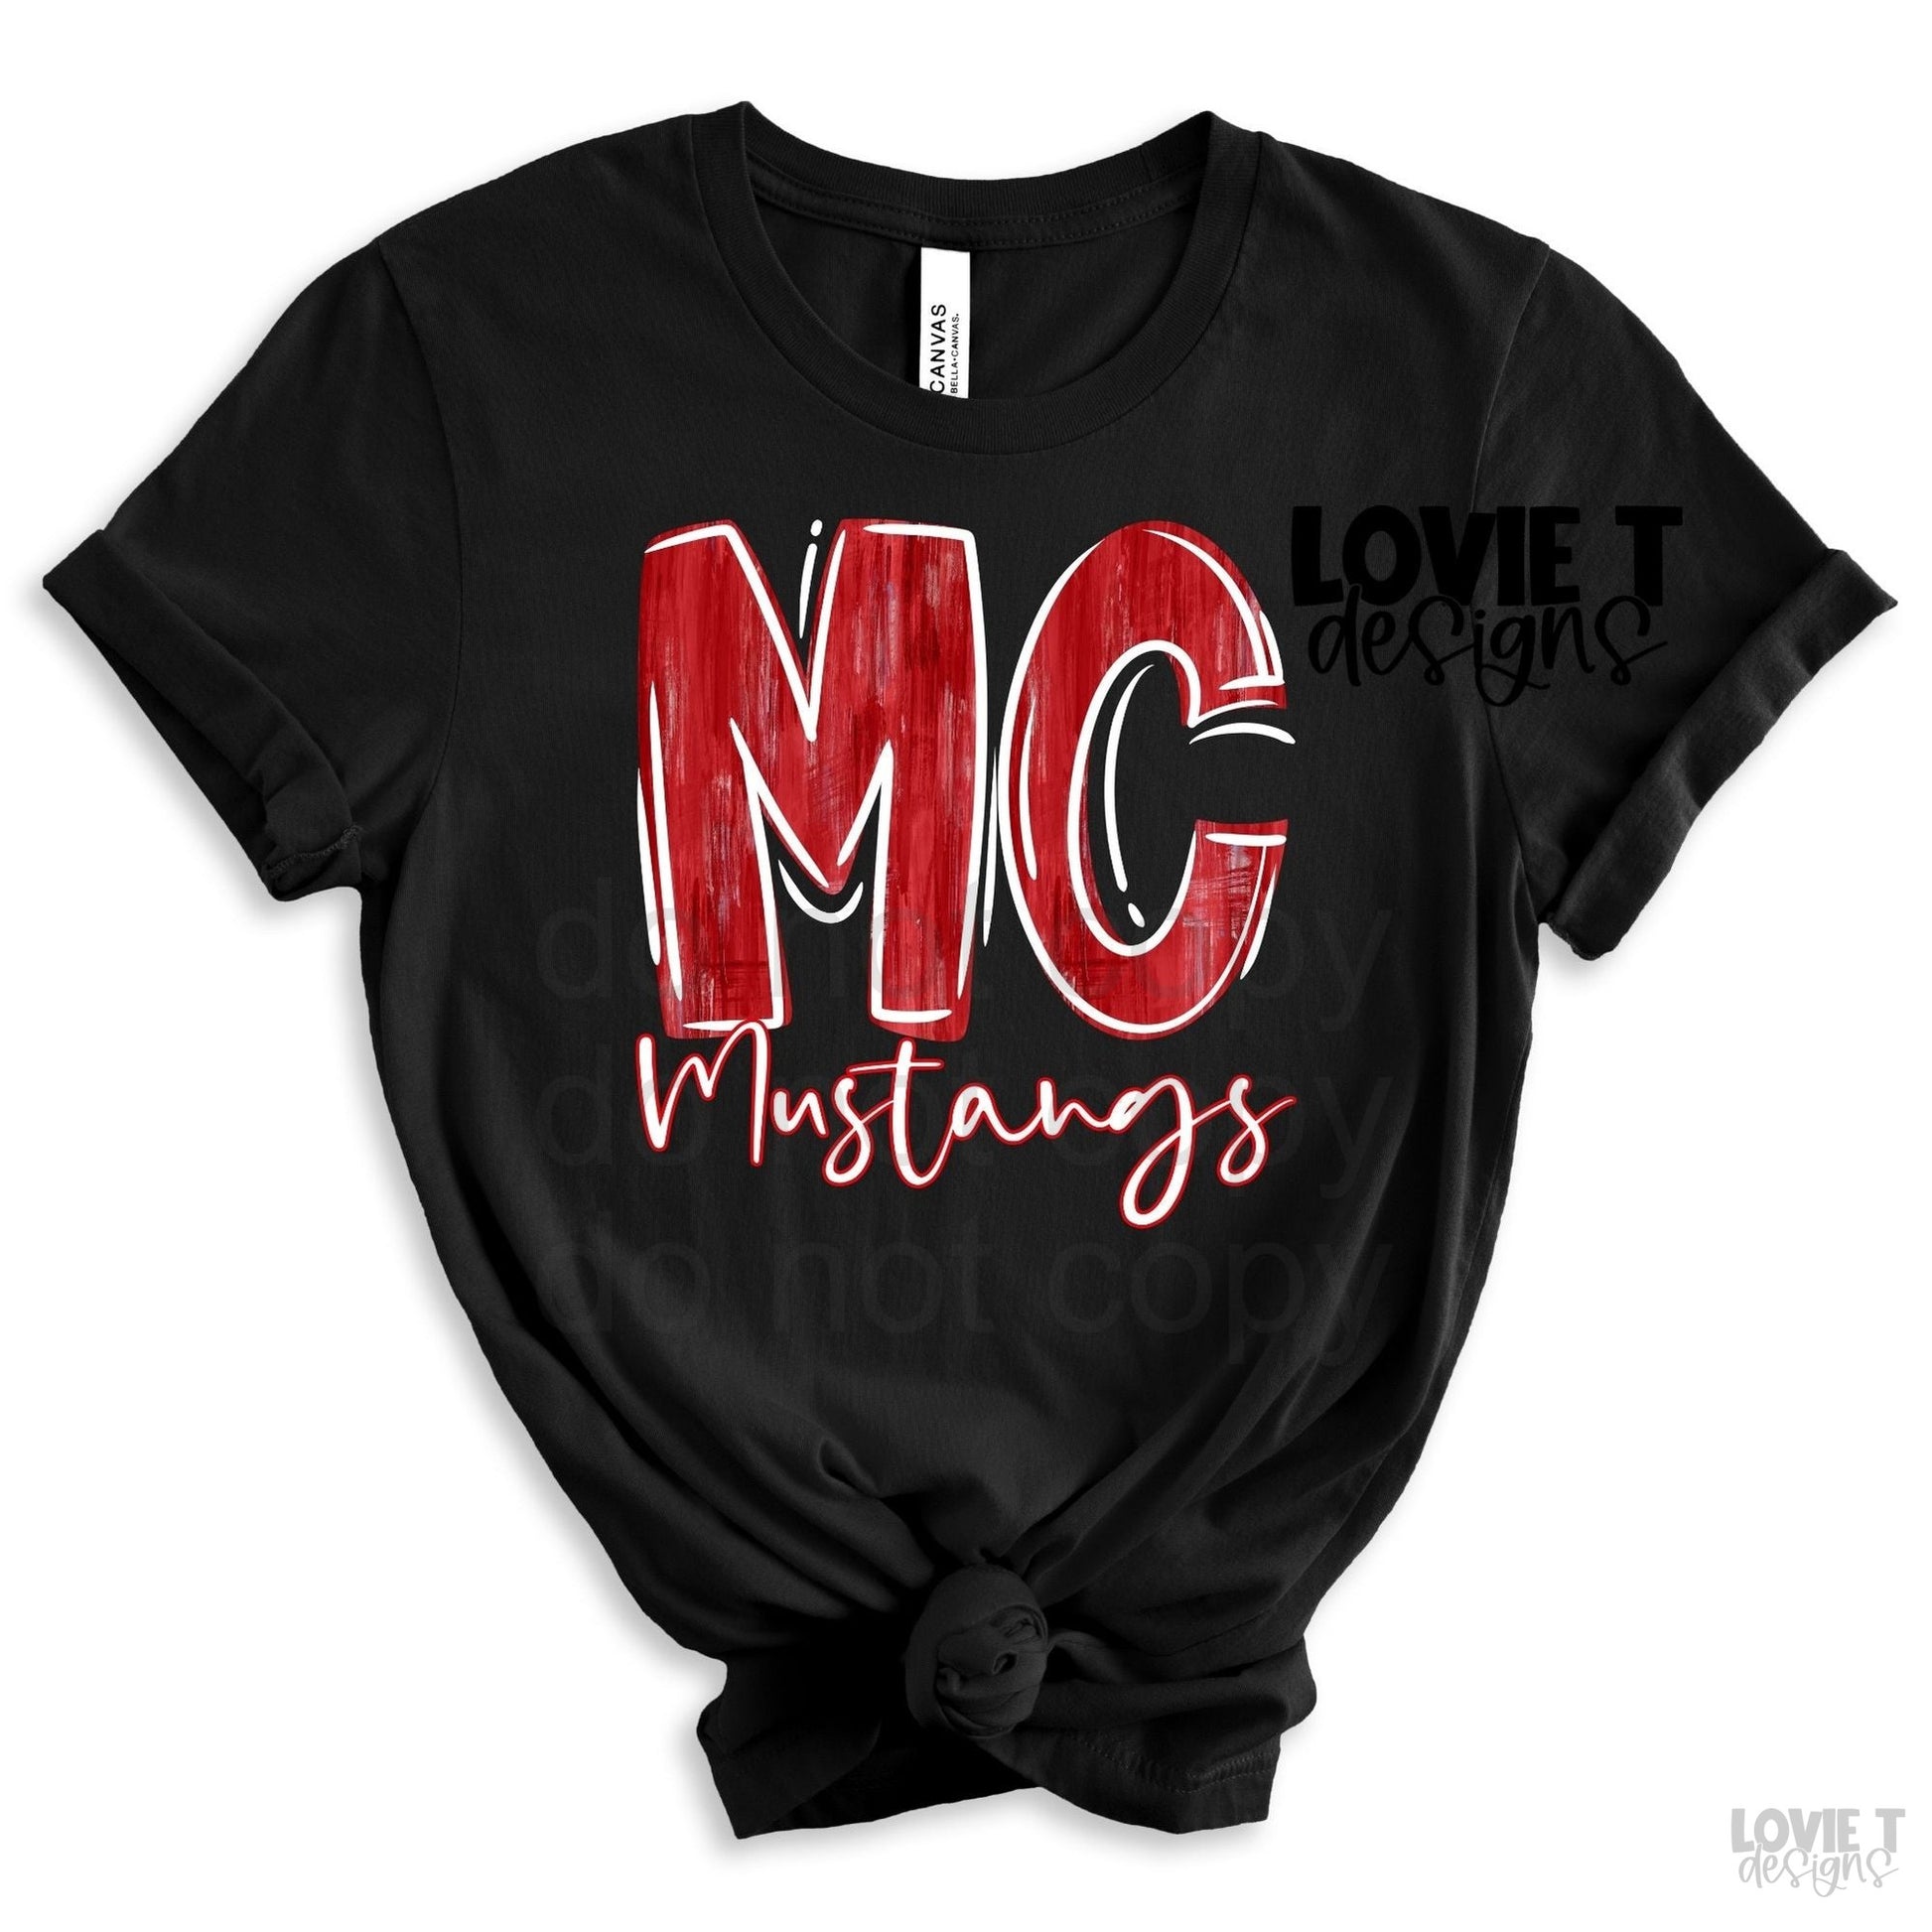 Red and White MC Mustangs-Lovie T Designs